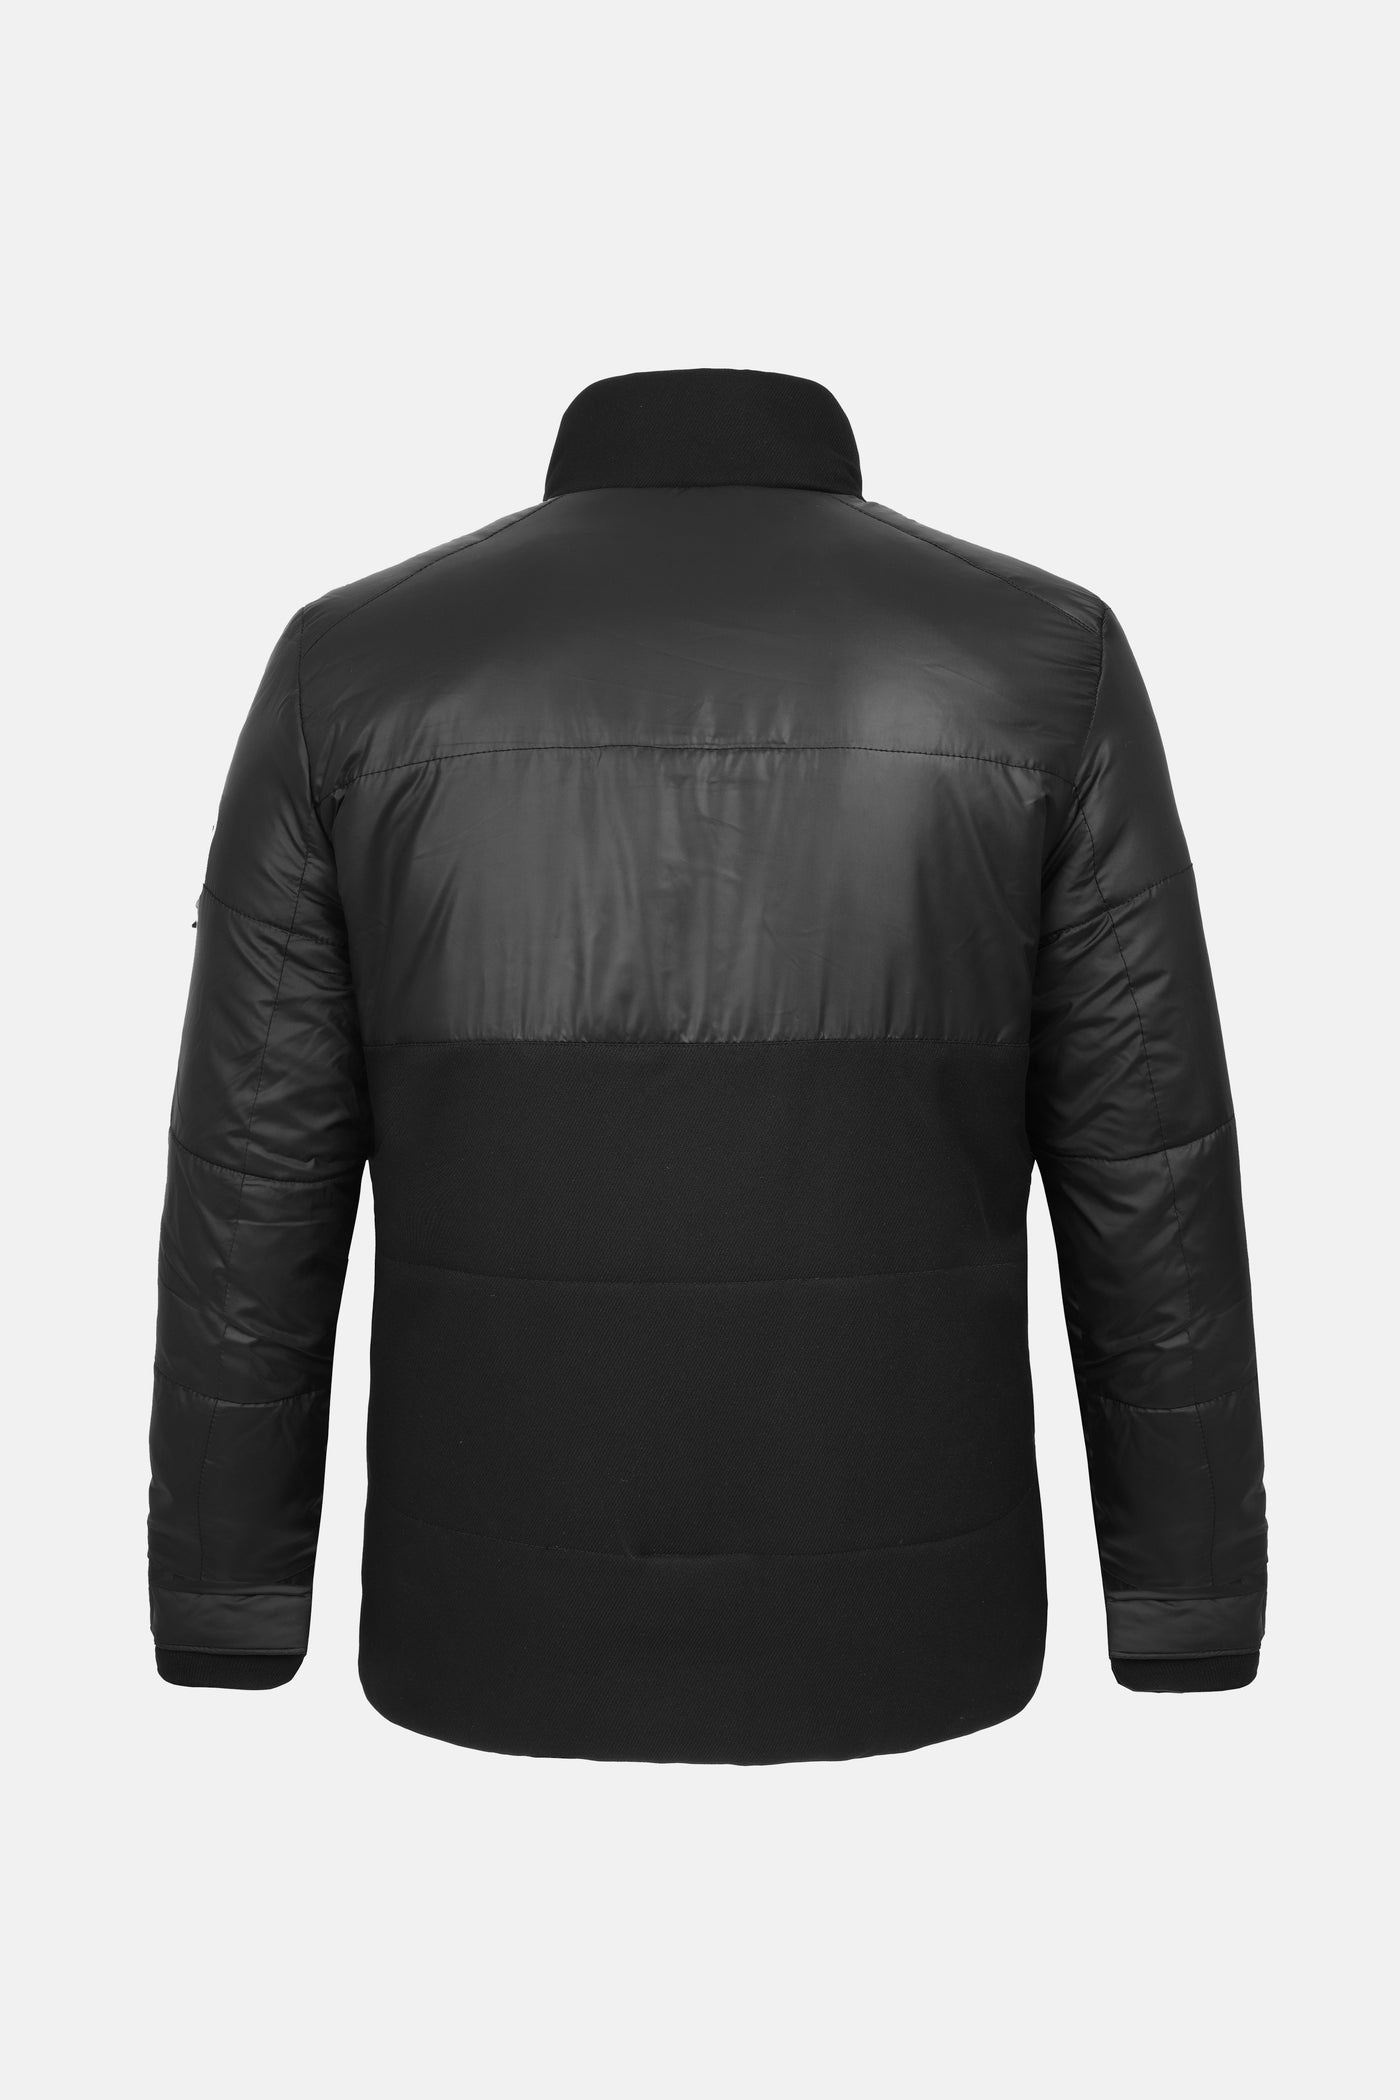 Black Woven Waterproof Jacket